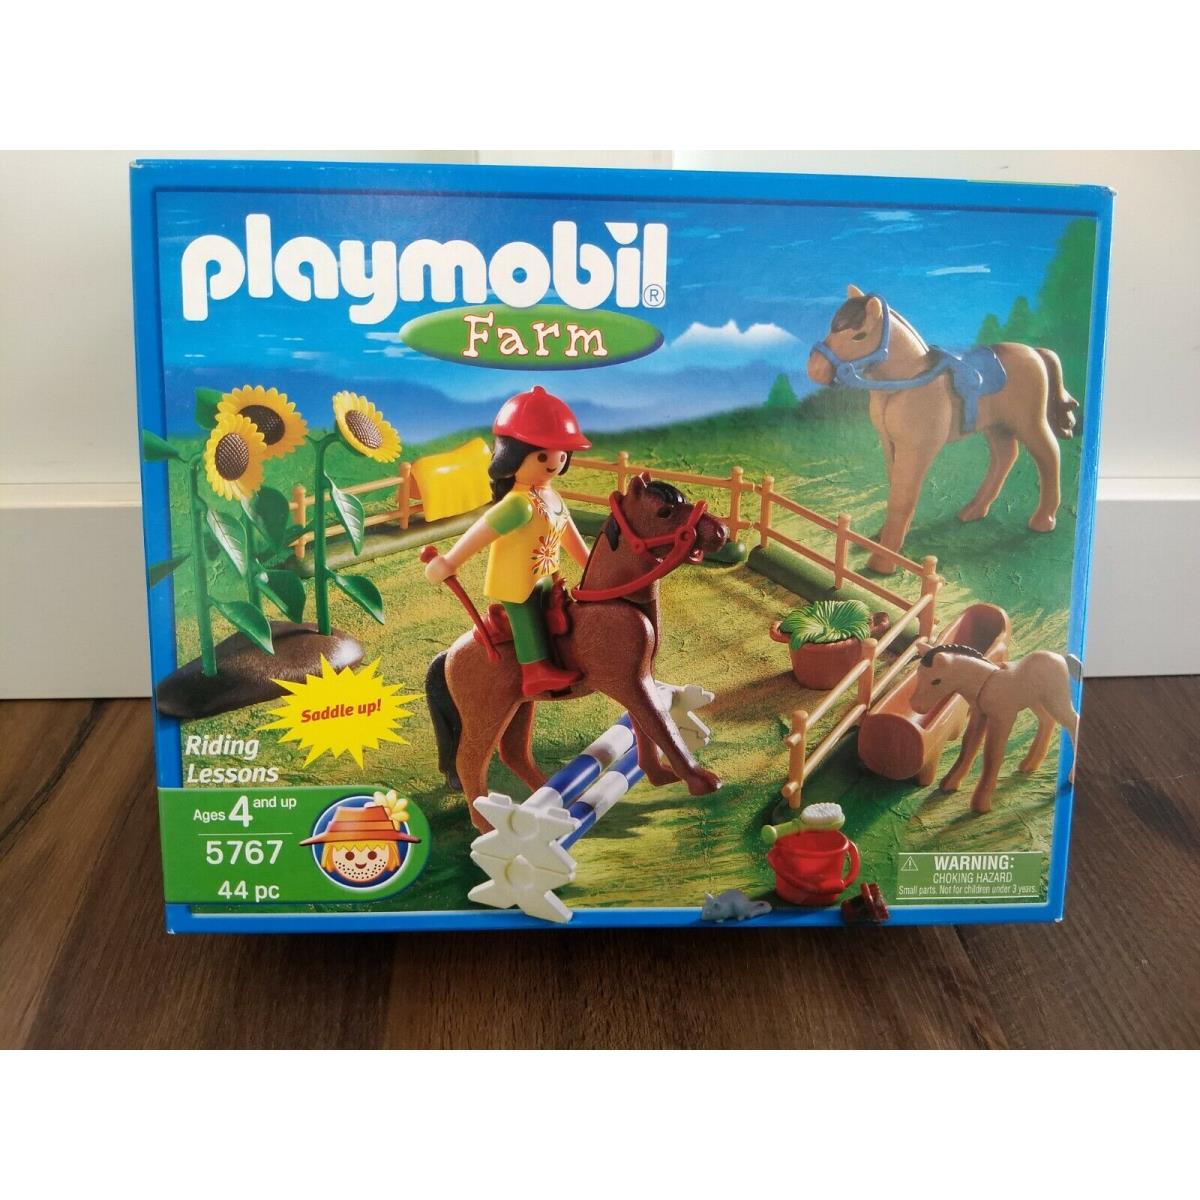 Playmobil 5767 Farm Riding Lessons